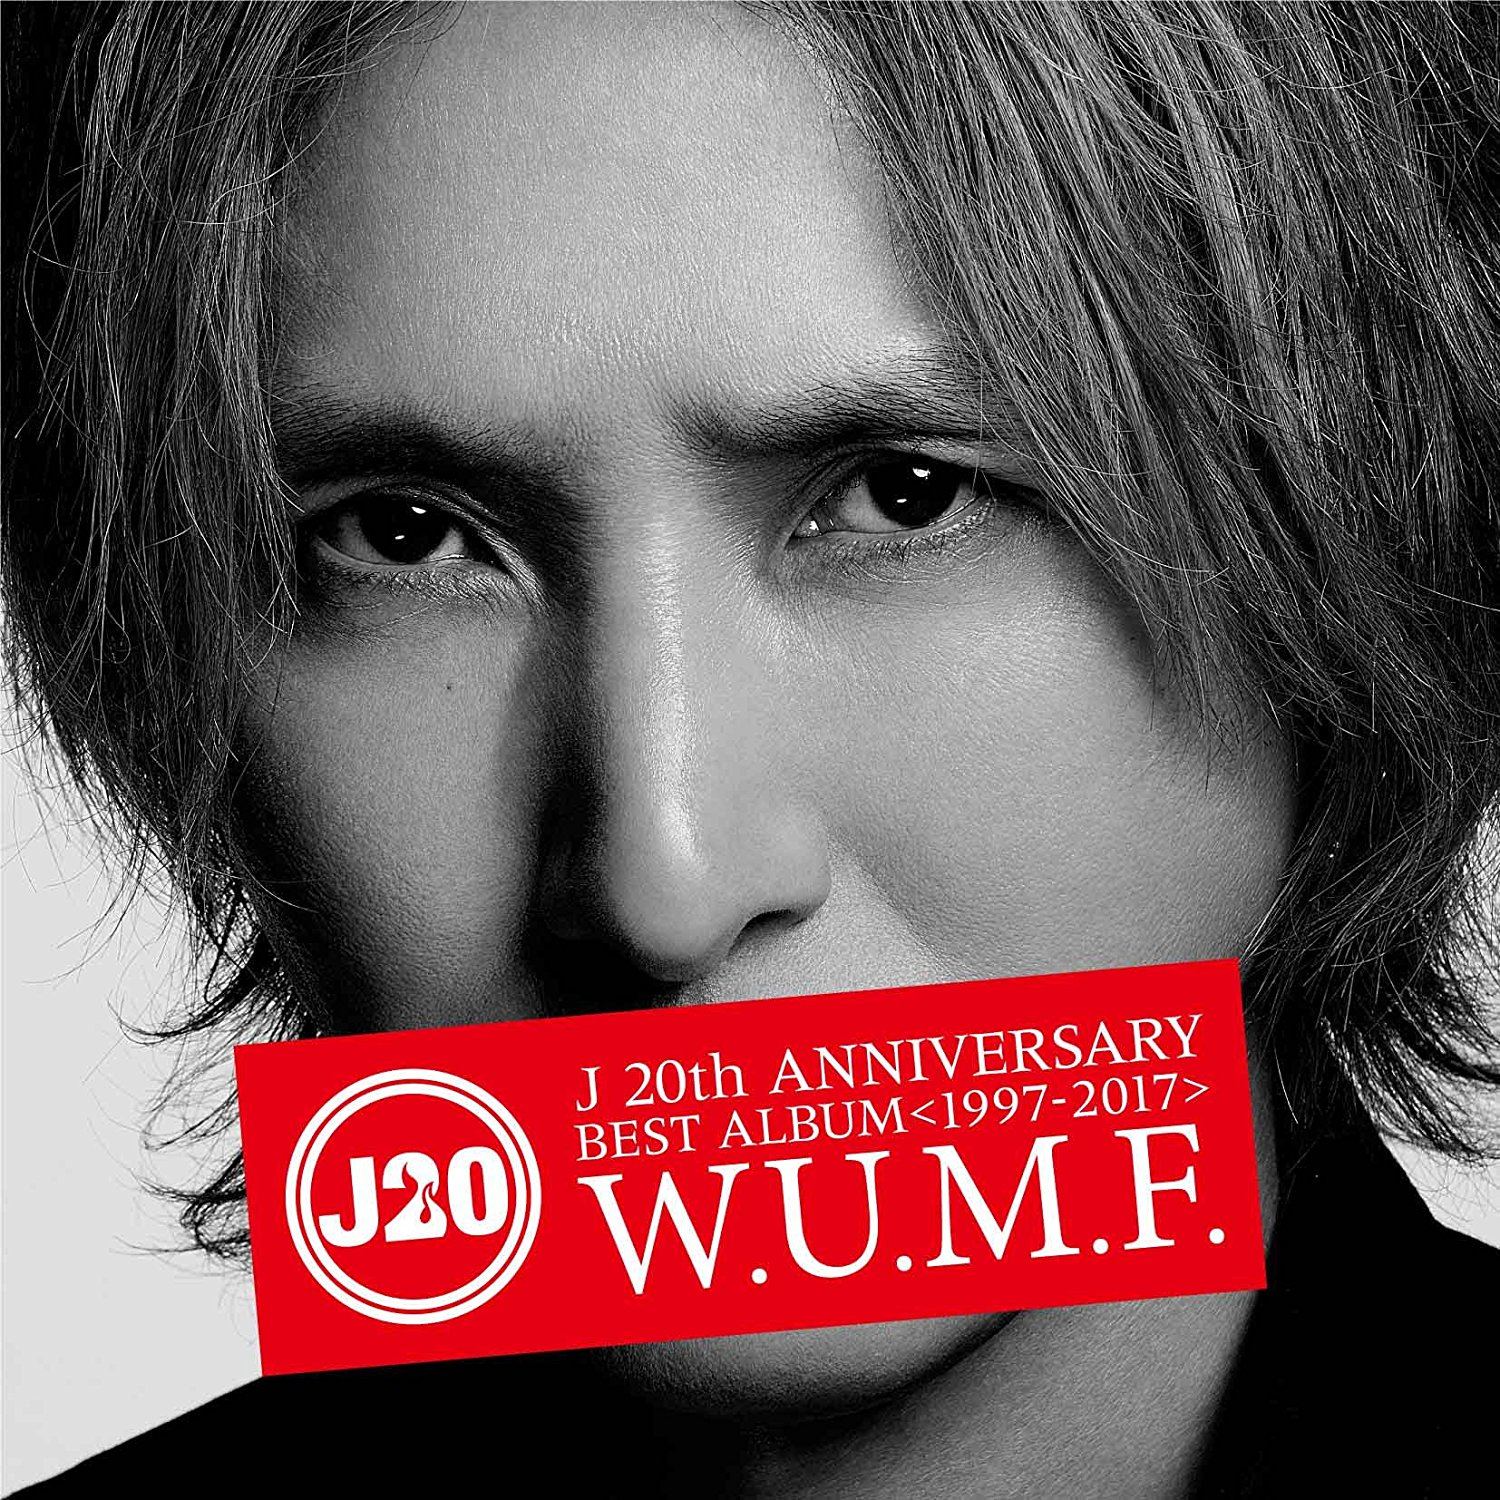 J 20th Anniversary Best Album 1997-2017 W.U.M.F. [2CD+Blu-ray]